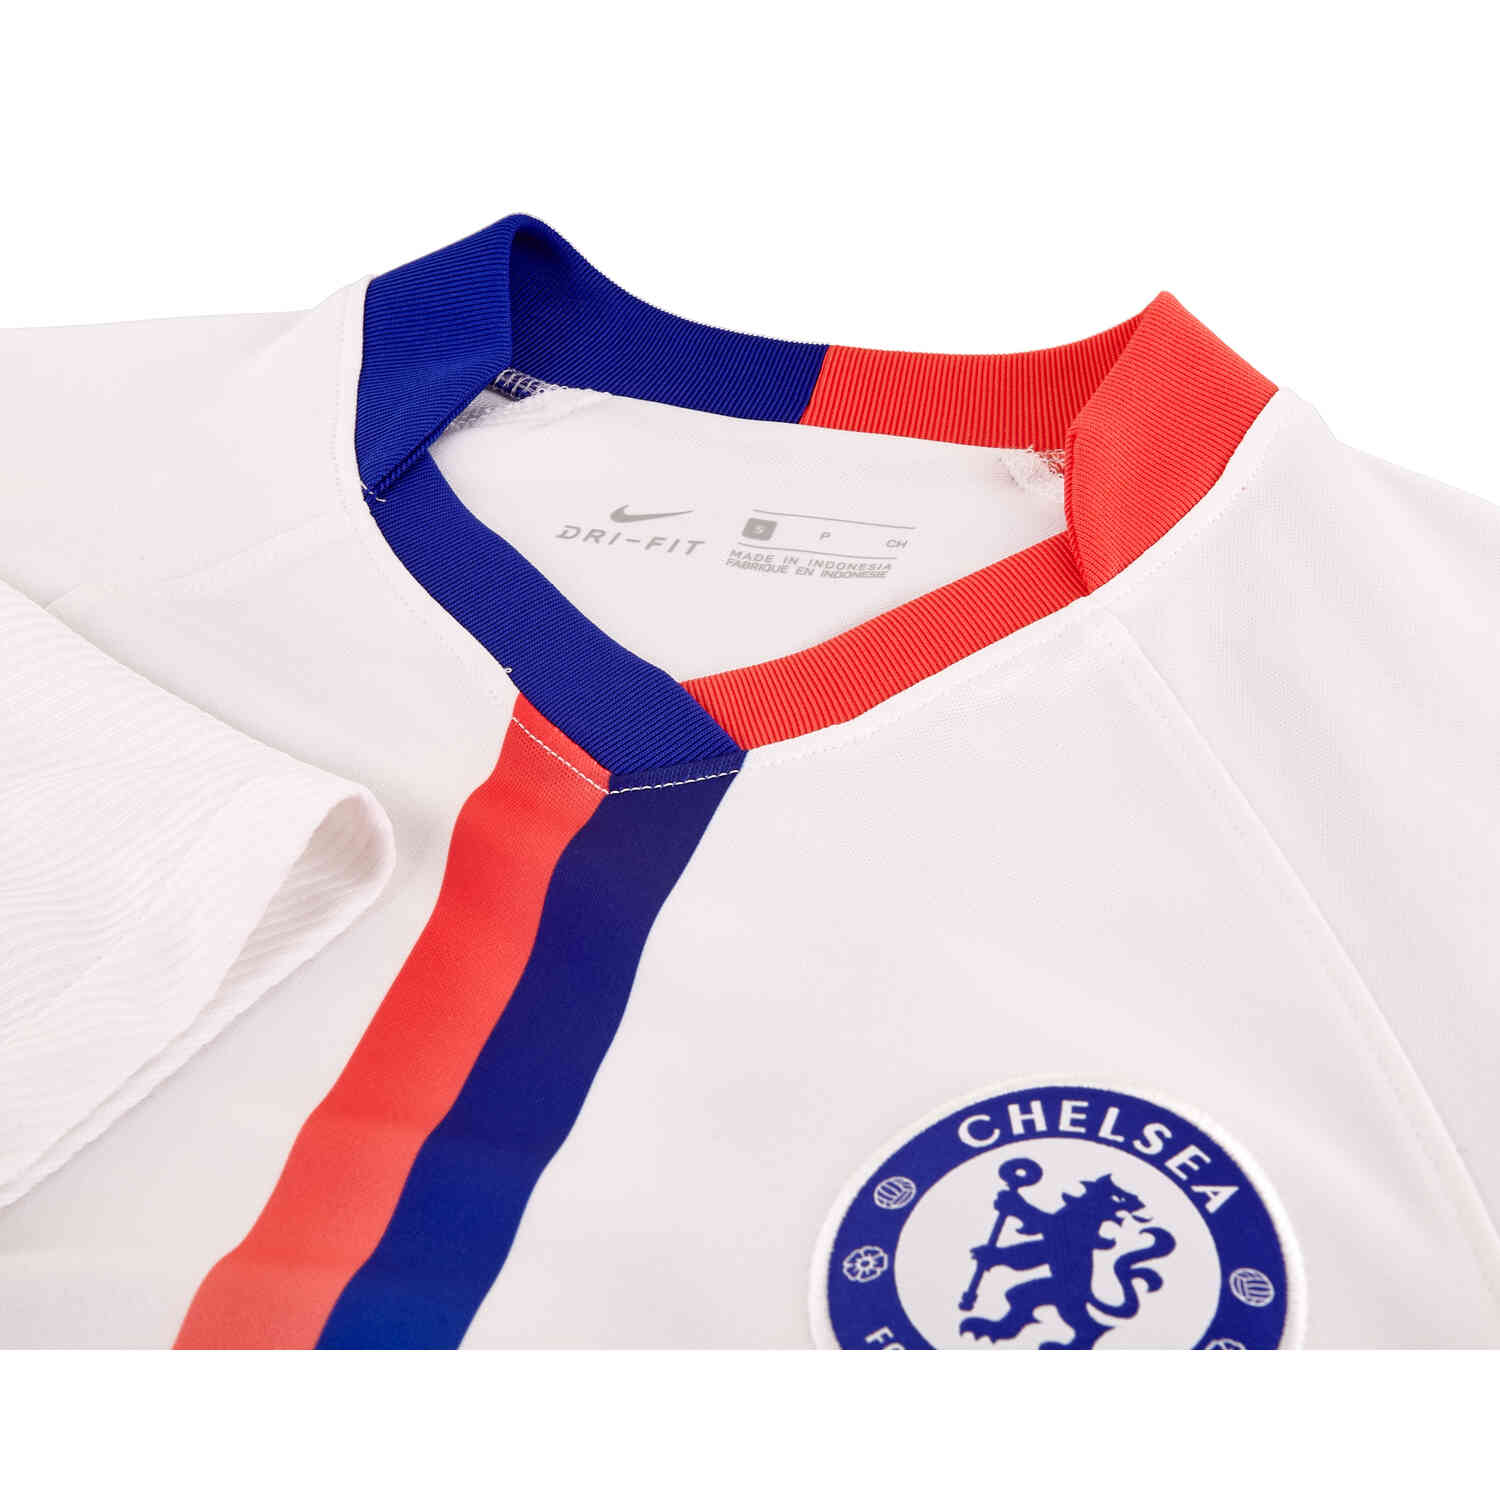 Nike Chelsea 20/21 Air Max Shirt (White)